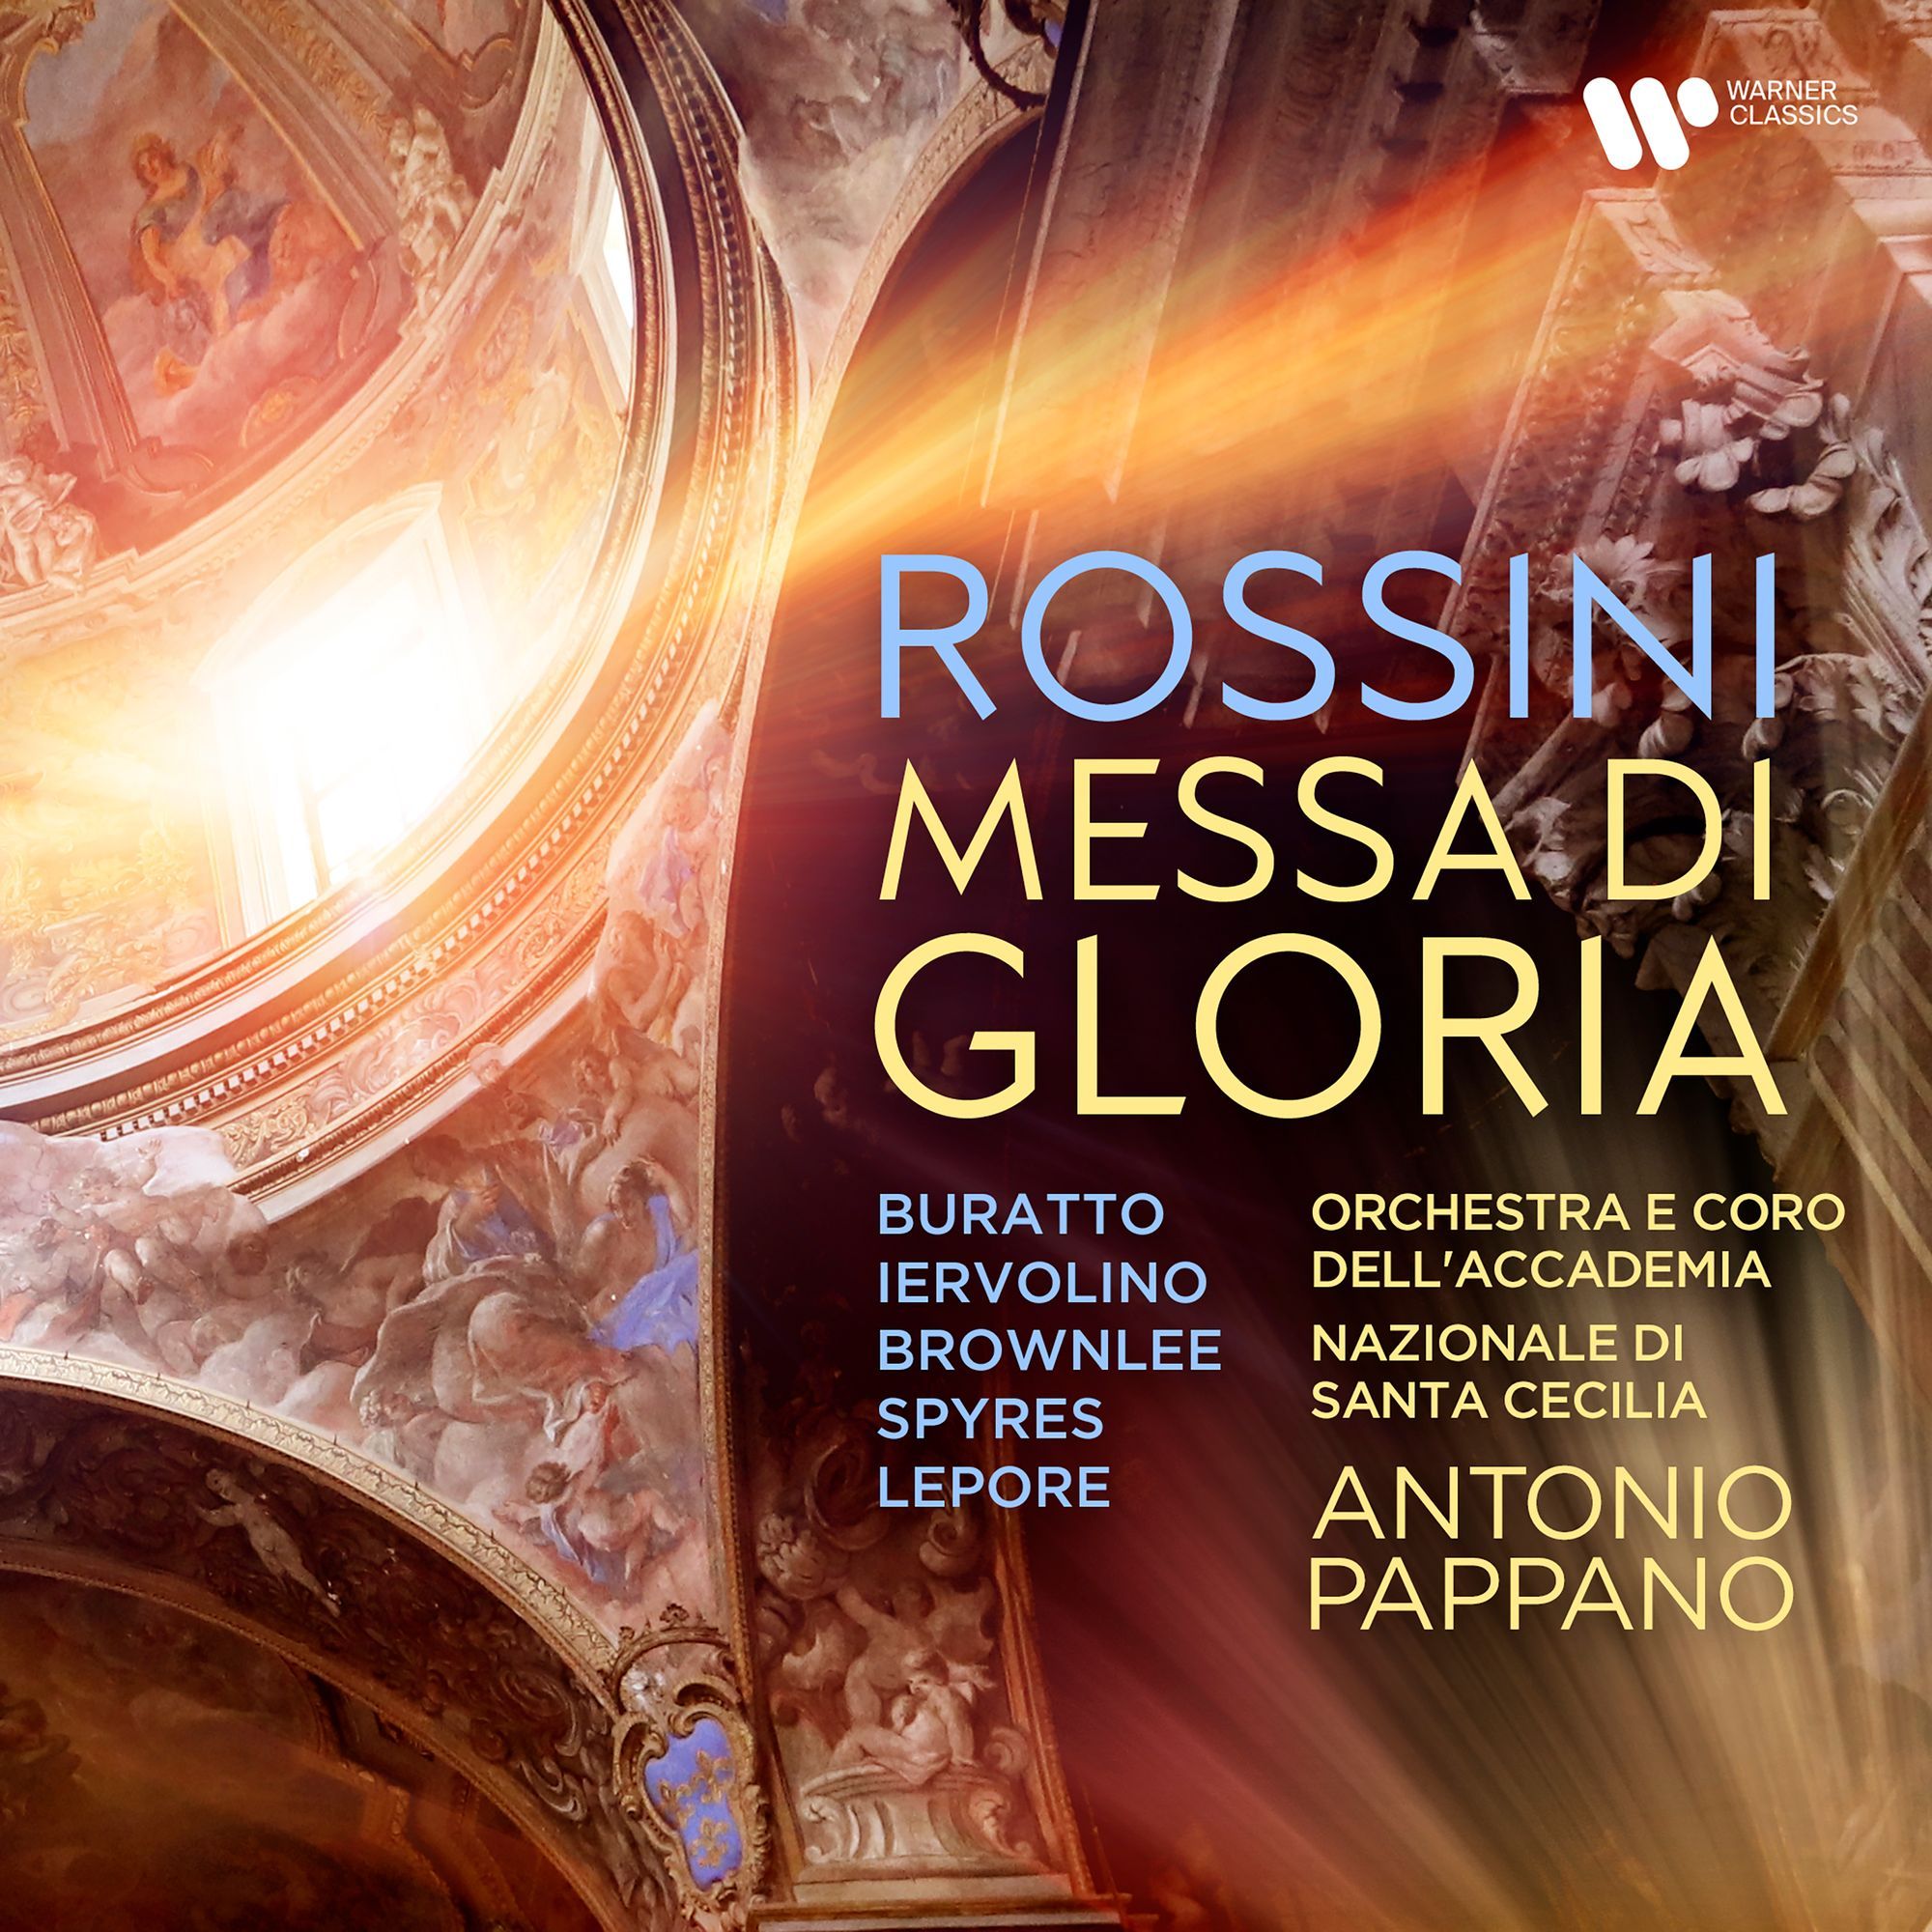 Rossini Messa di Gloria: Pappano triumphs